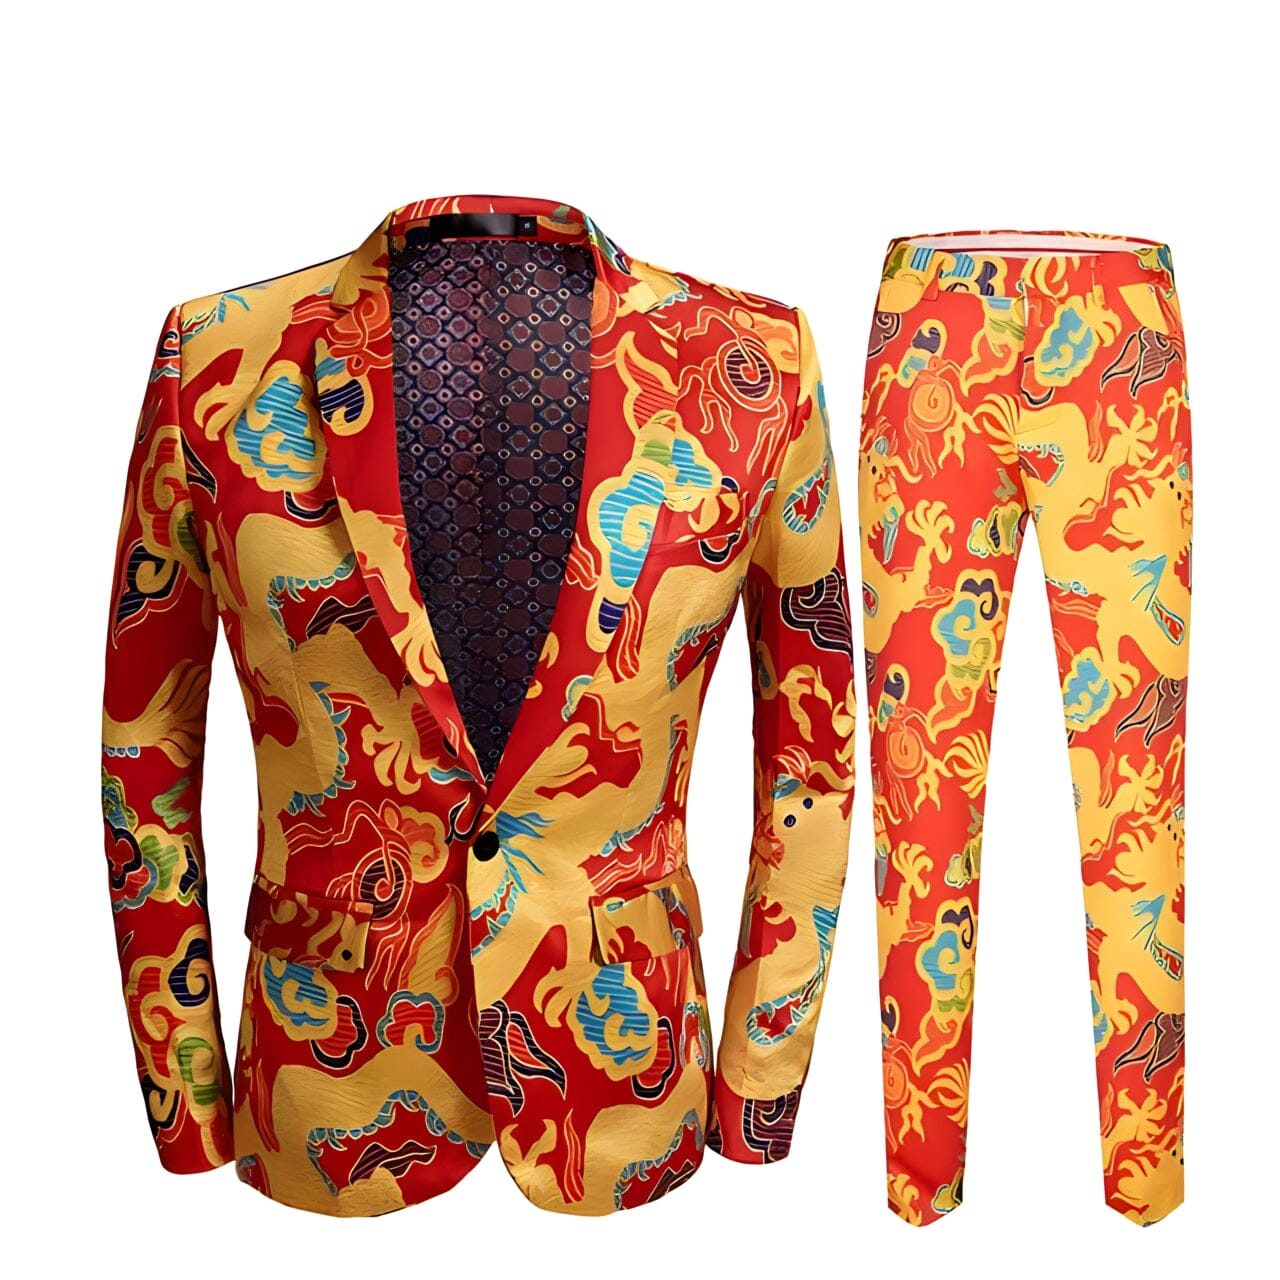 The Doragon Slim Fit Two-Piece Suit Shop5798684 Store XS 